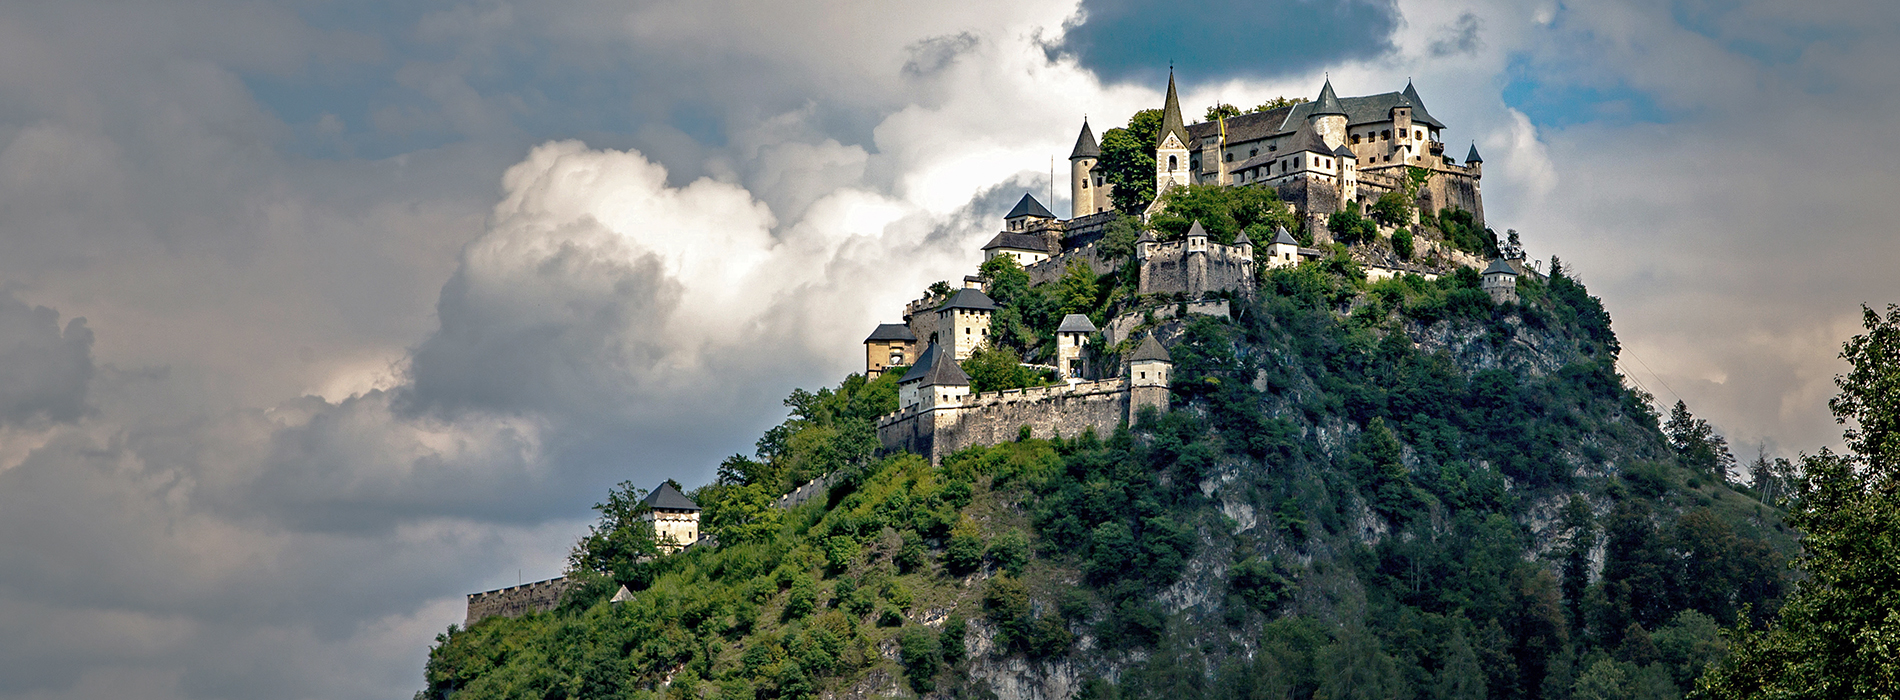 Archaic Burg Hochosterwitz - Best Places to Visit in Austria